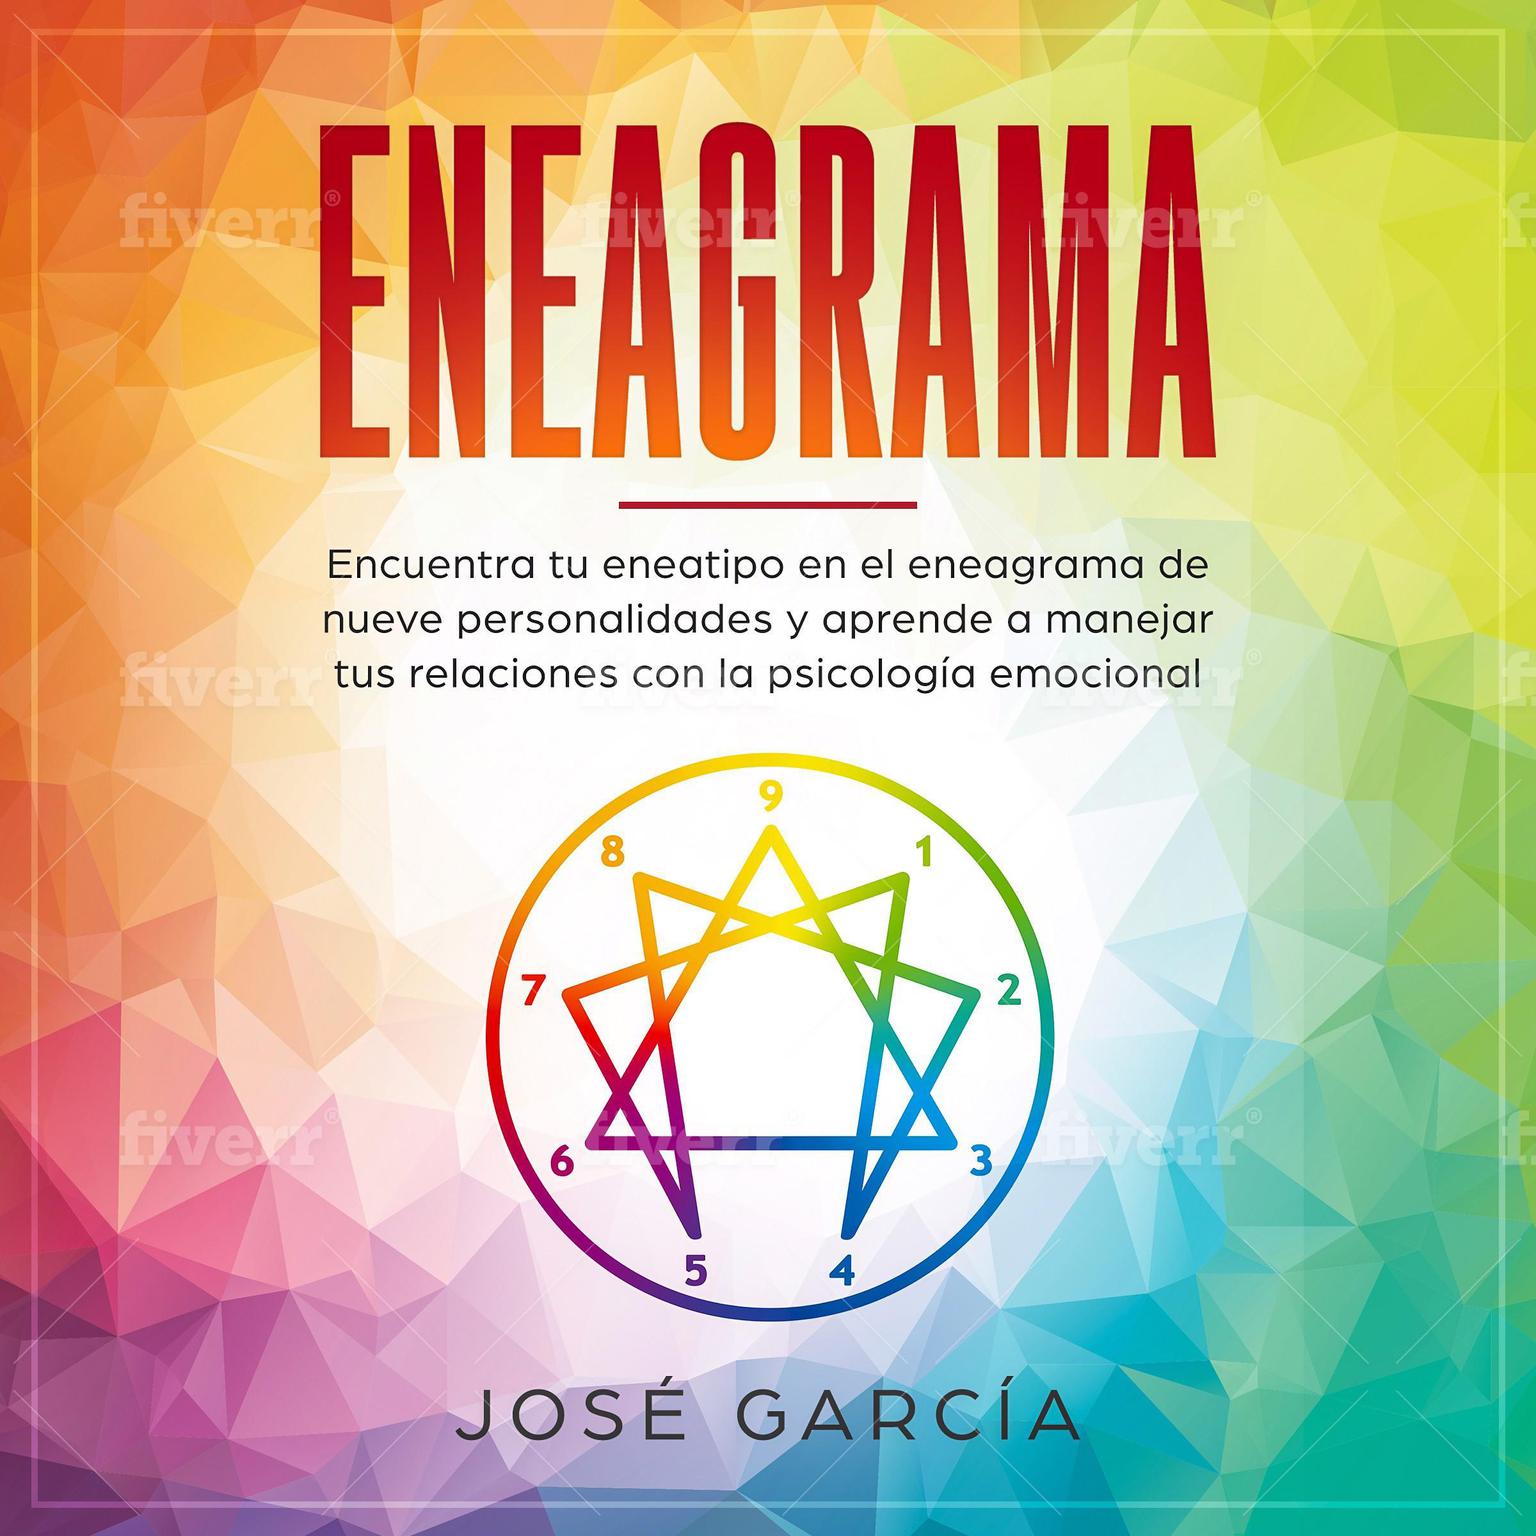 Eneagrama: Encuentra tu eneatipo en el eneagrama de nueve personalidades y aprende a manejar tus relaciones con la psicología emocional Audiobook, by Jose Garcia